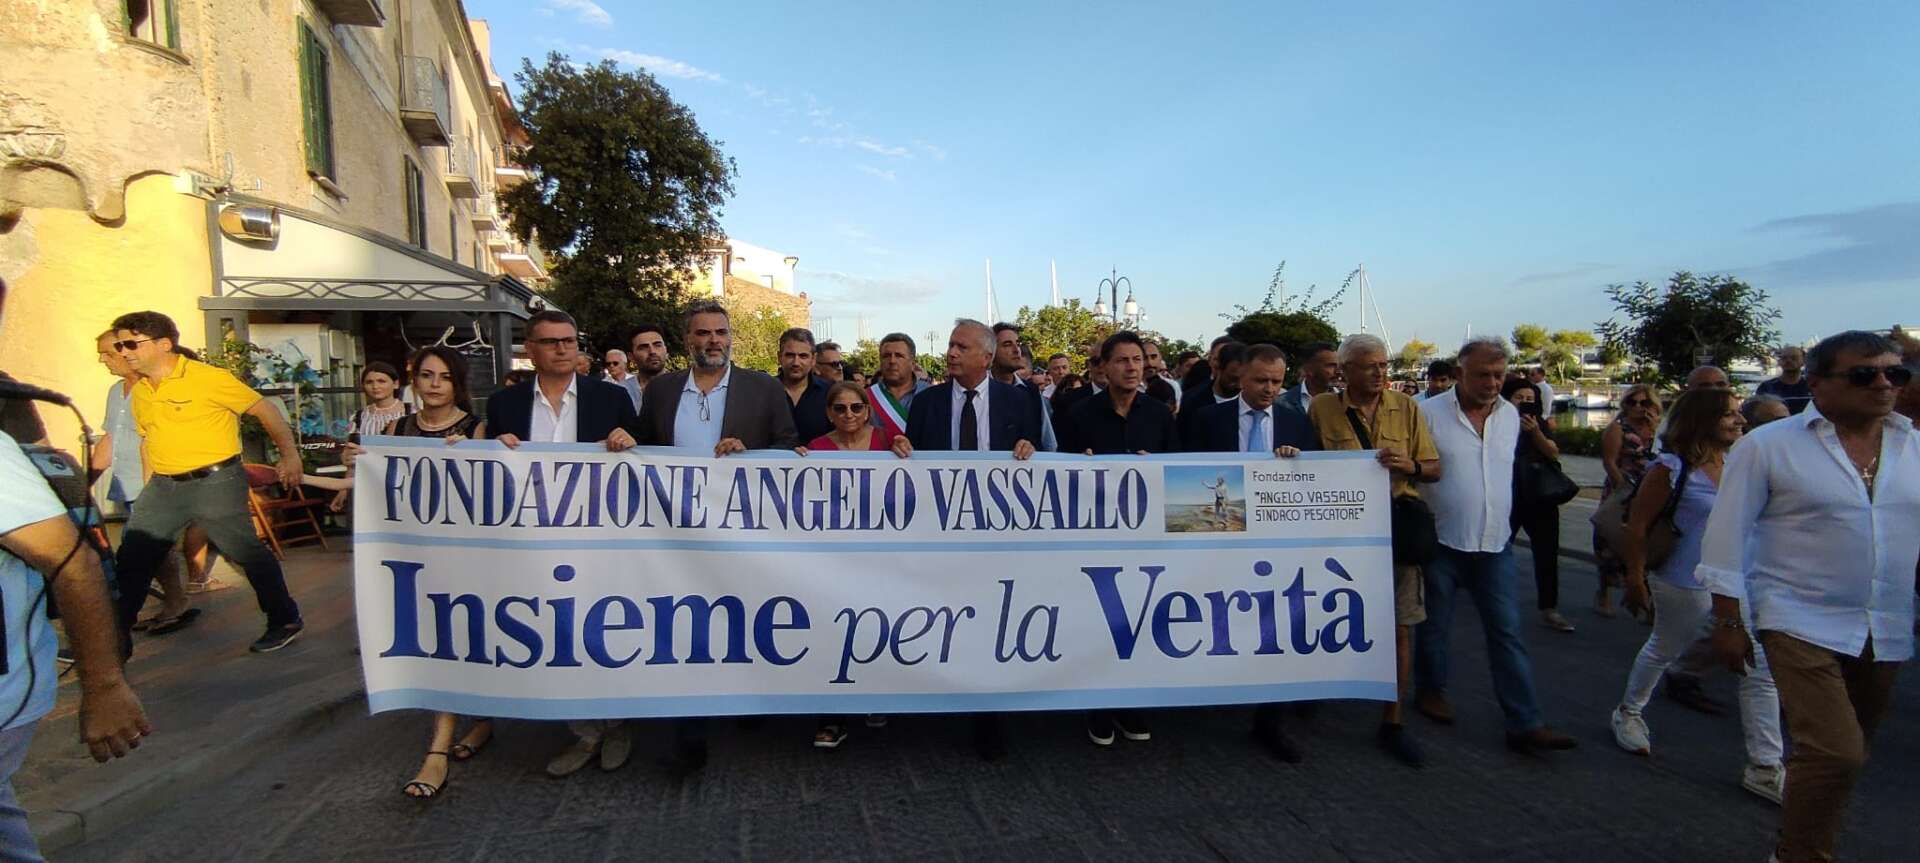 Acciaroli ricorda il sindaco-pescatore: sabato marcia della legalità per Angelo Vassallo